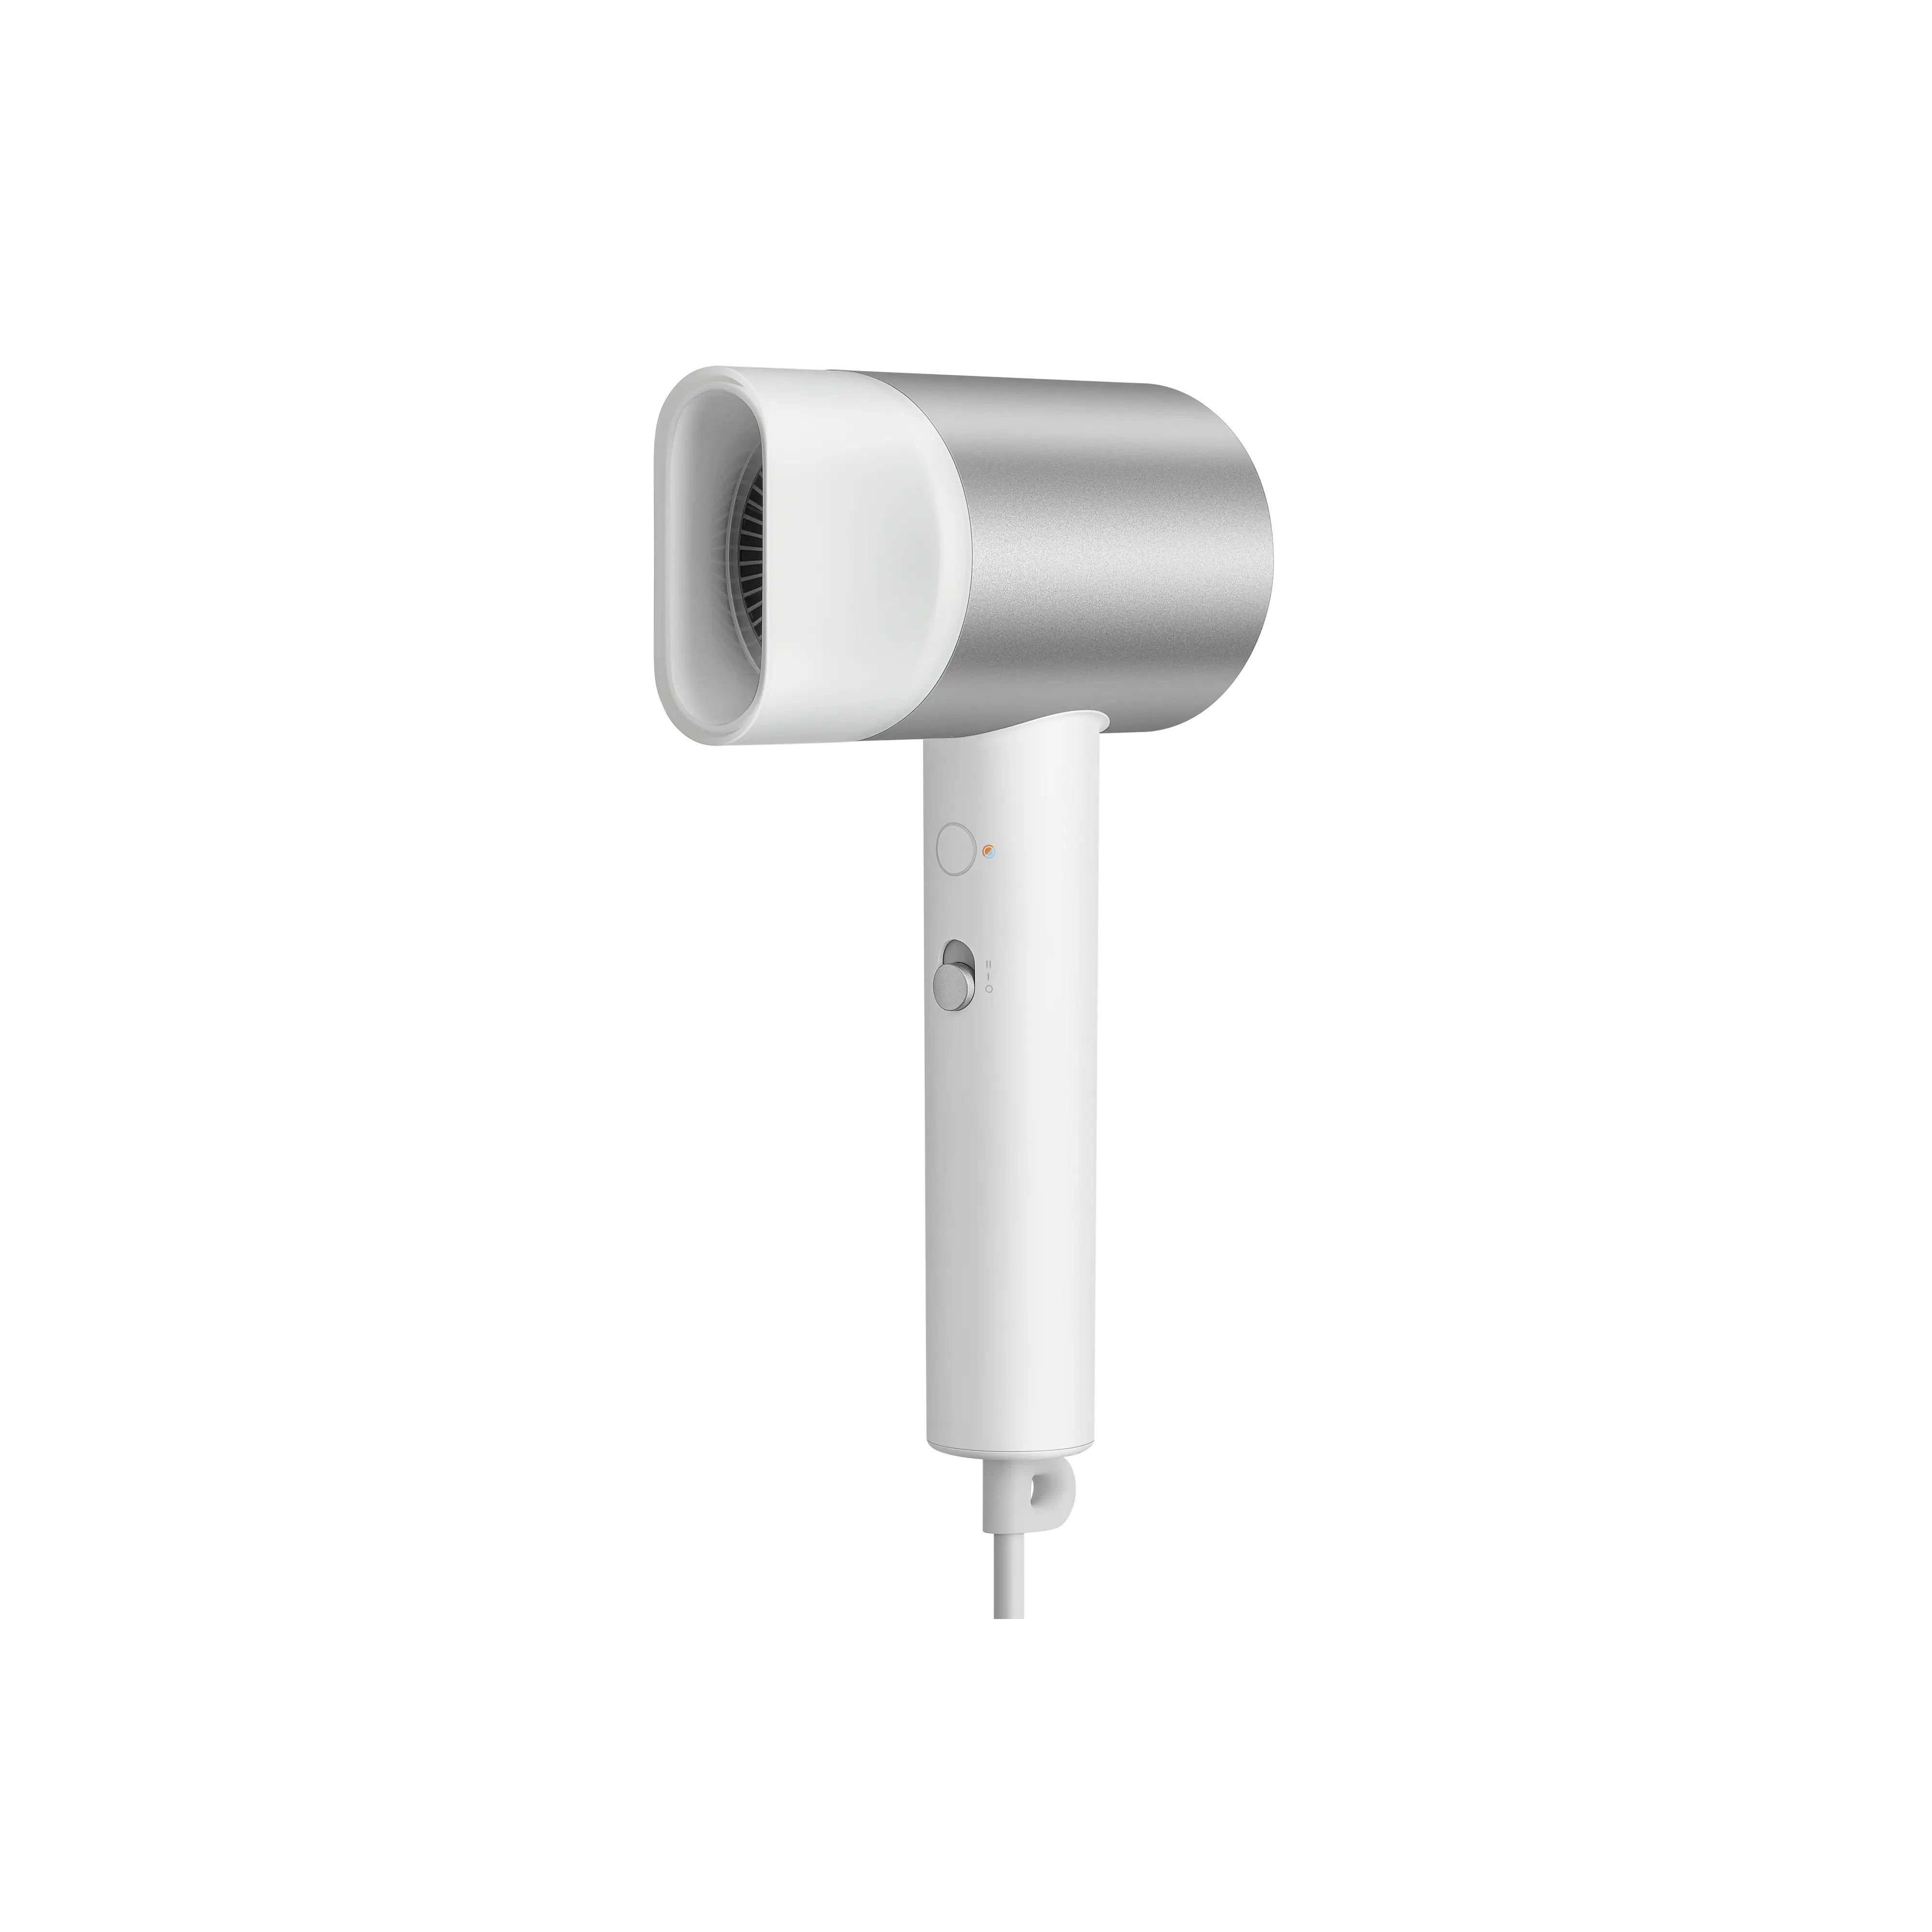 Фен Xiaomi H500 1800 Вт серебристый, белый бант для волос винкс белый кружевной 11 см